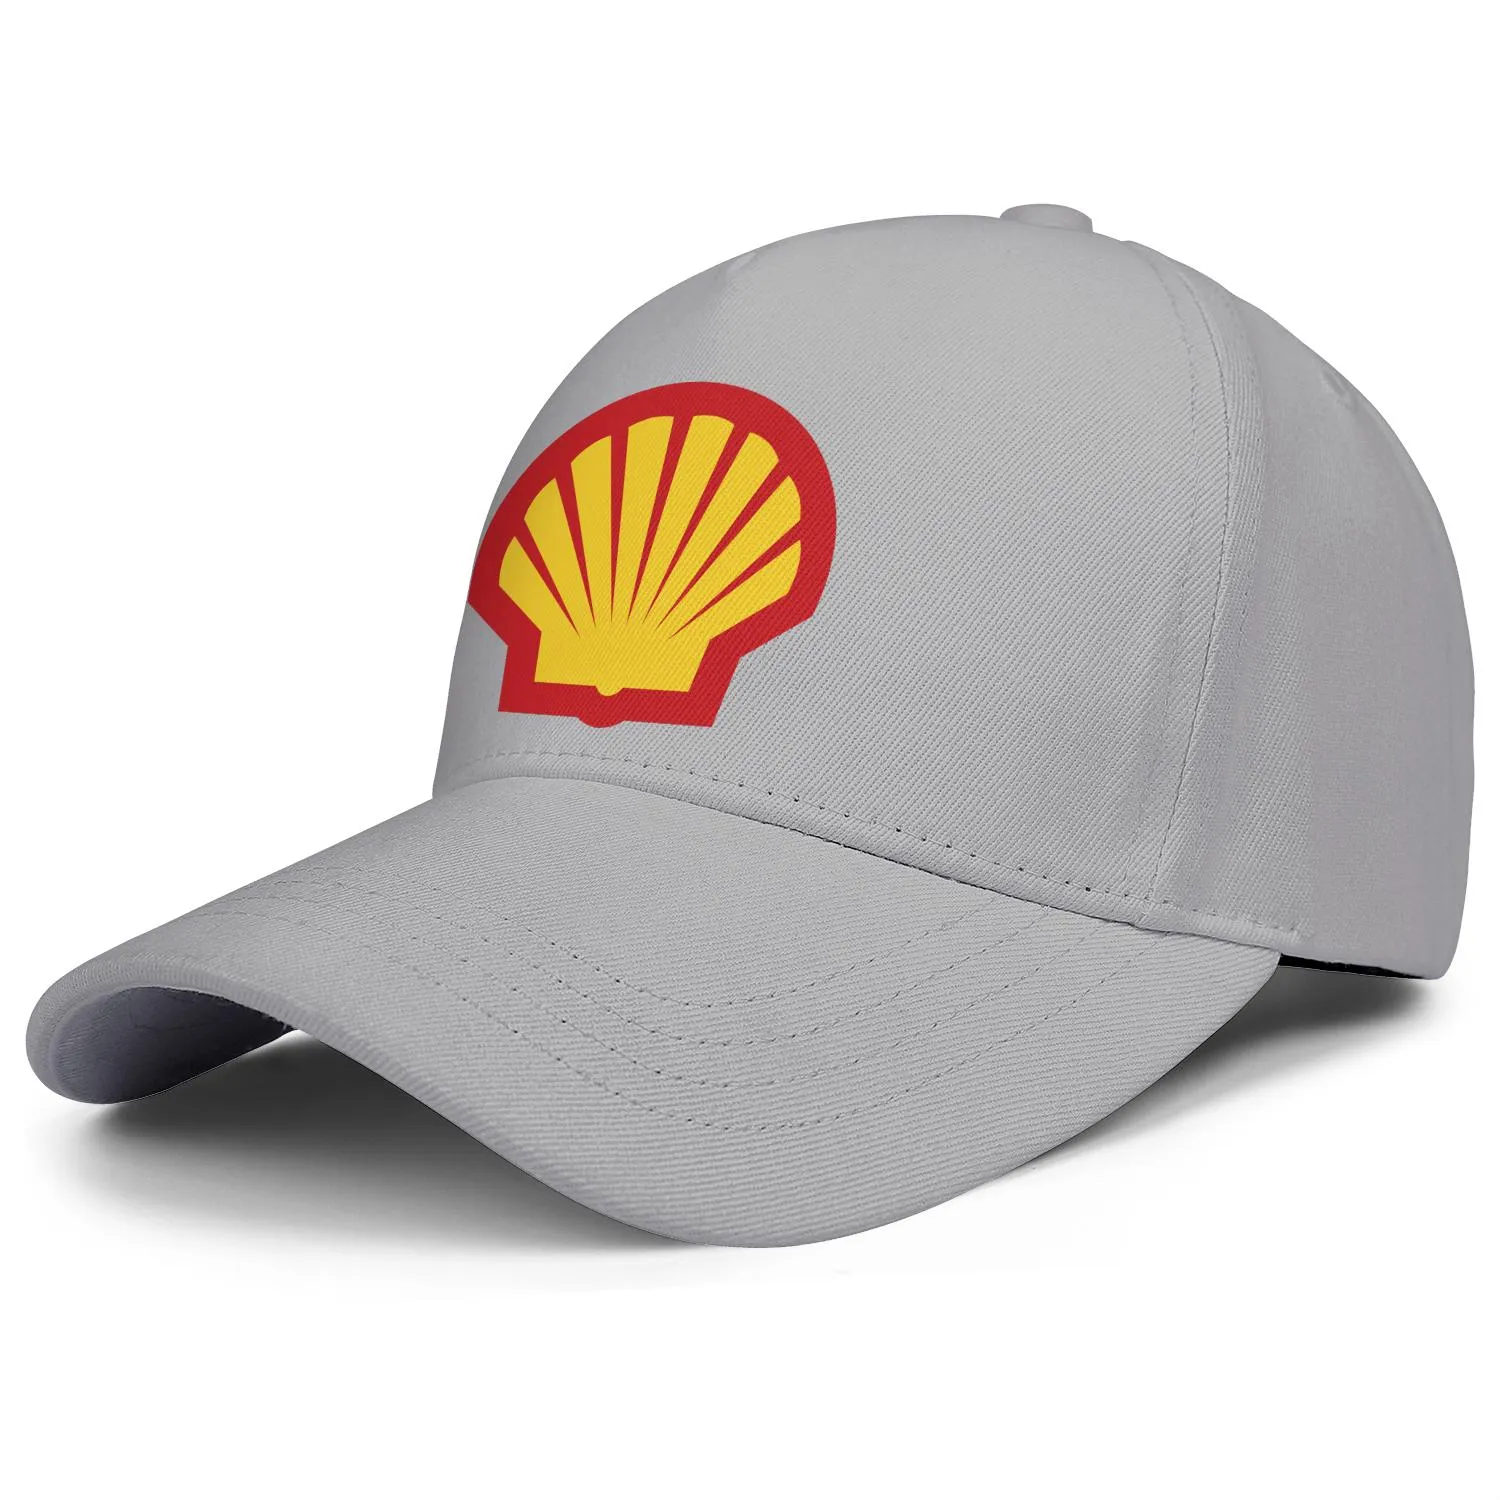 Logo de la station-service à essence Shell pour hommes et femmes casquette de camionneur ajustable ajustée vintage mignon baseballhats localisateur d'essence symbo311B